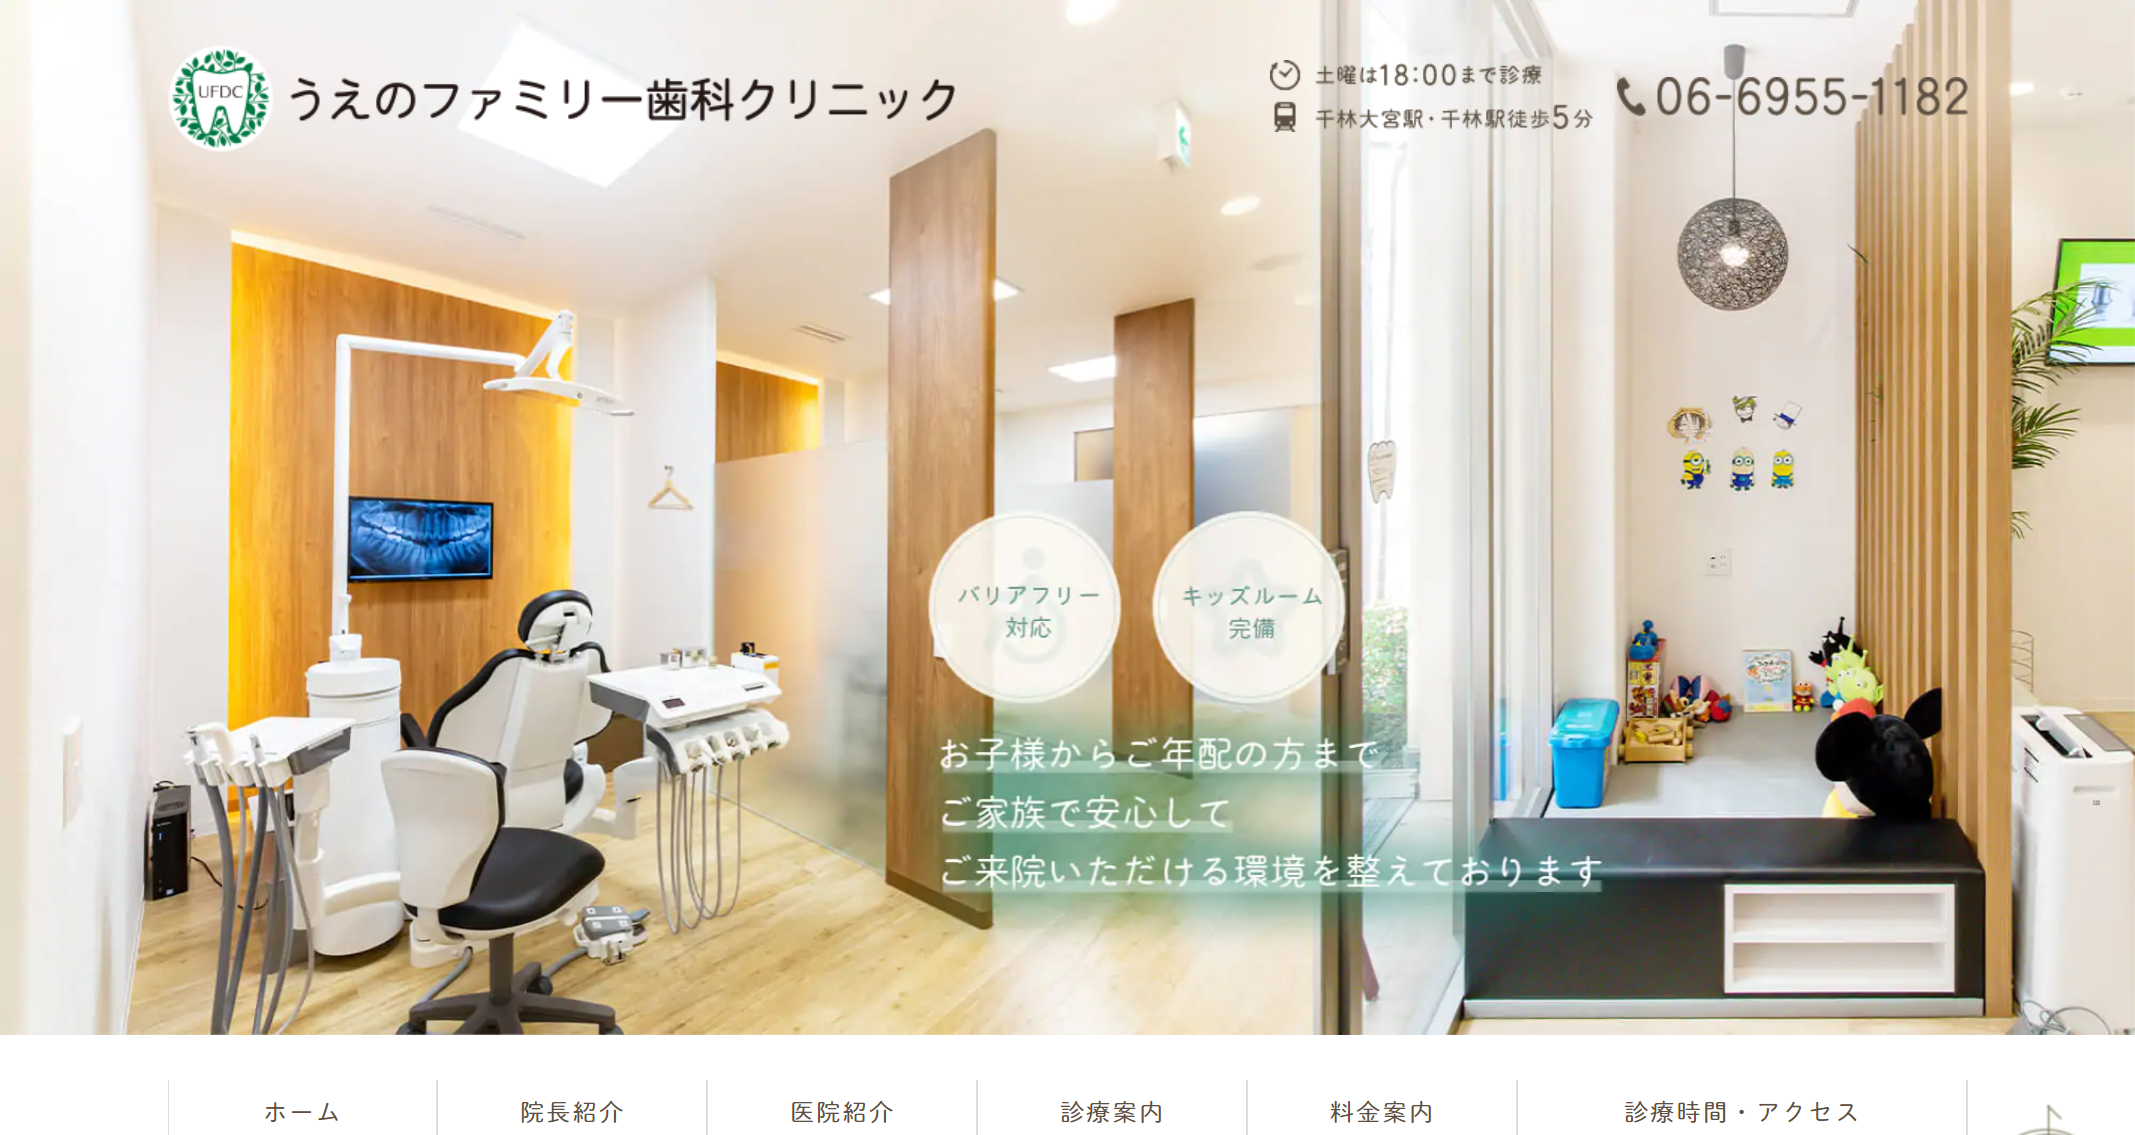 大阪市で評判のセラミック治療におすすめの歯科クリニック10選 うえのファミリー歯科クリニック